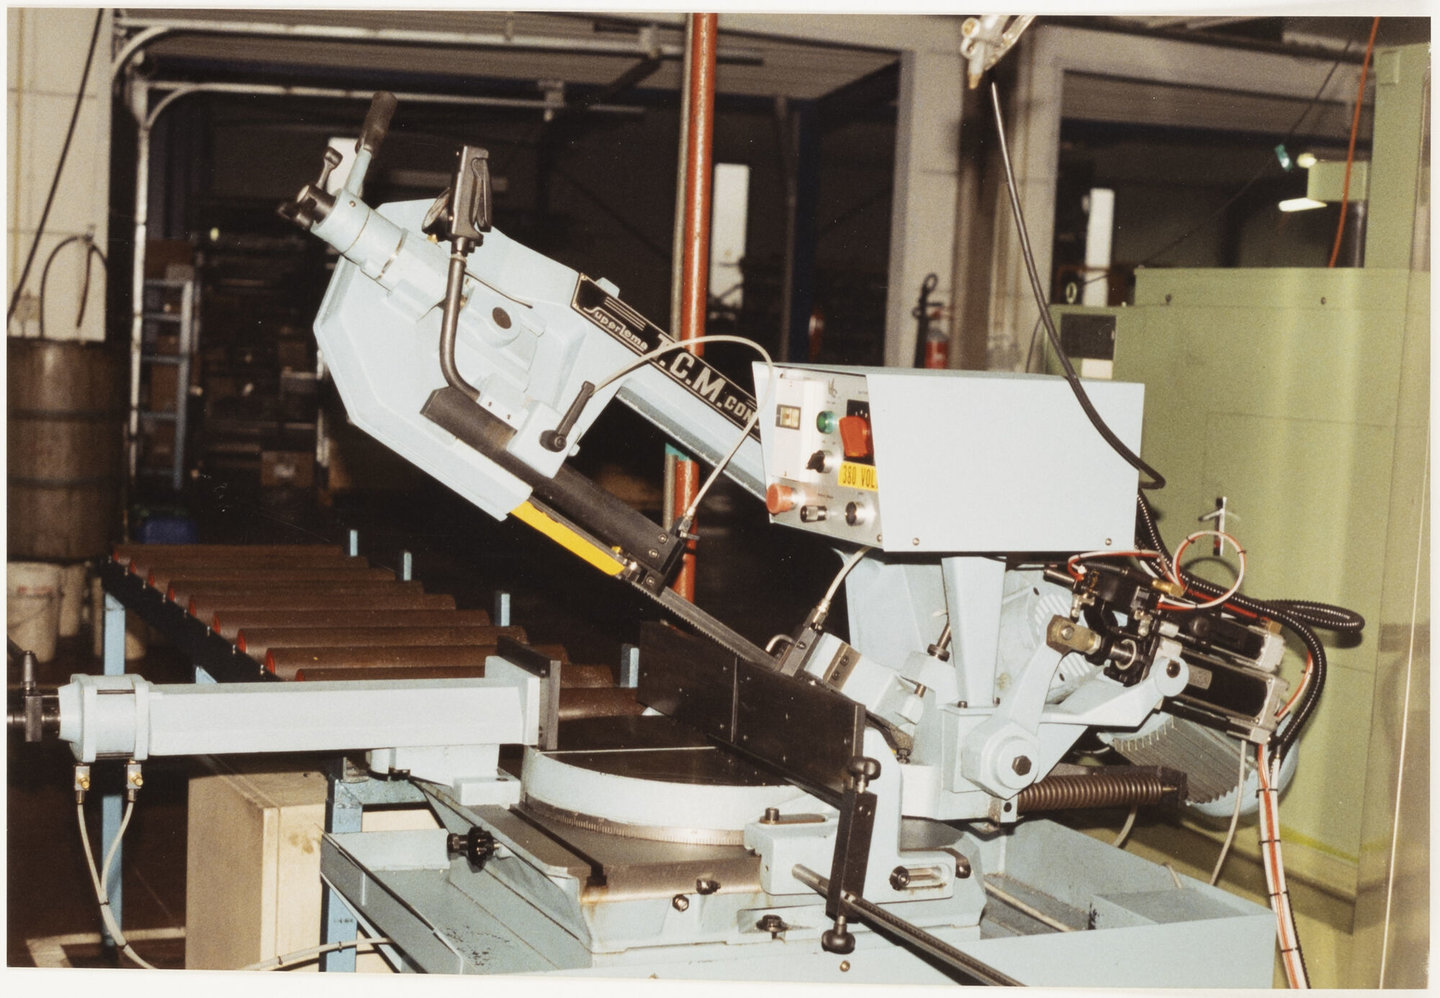 Beugelzaagmachine in machinewerkplaats van Lentz in Gent